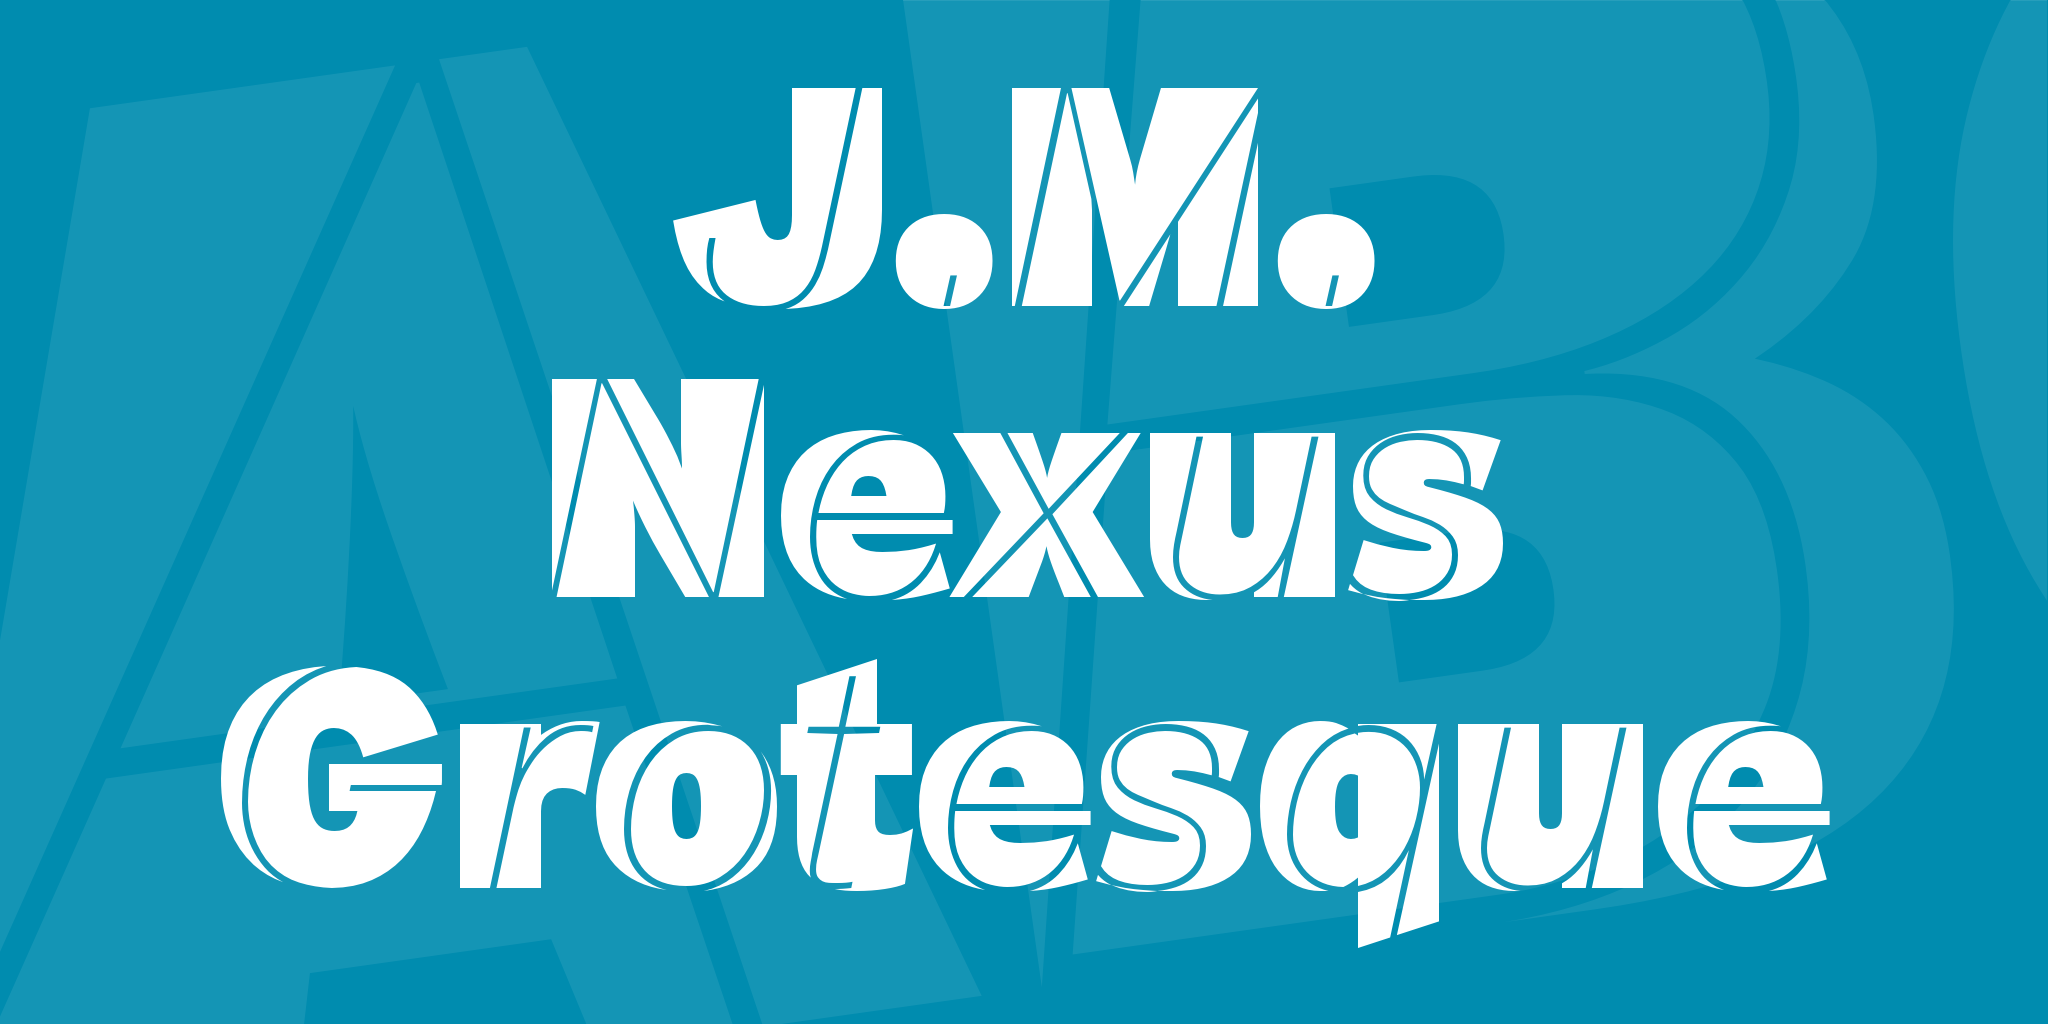 J M Nexus Grotesque